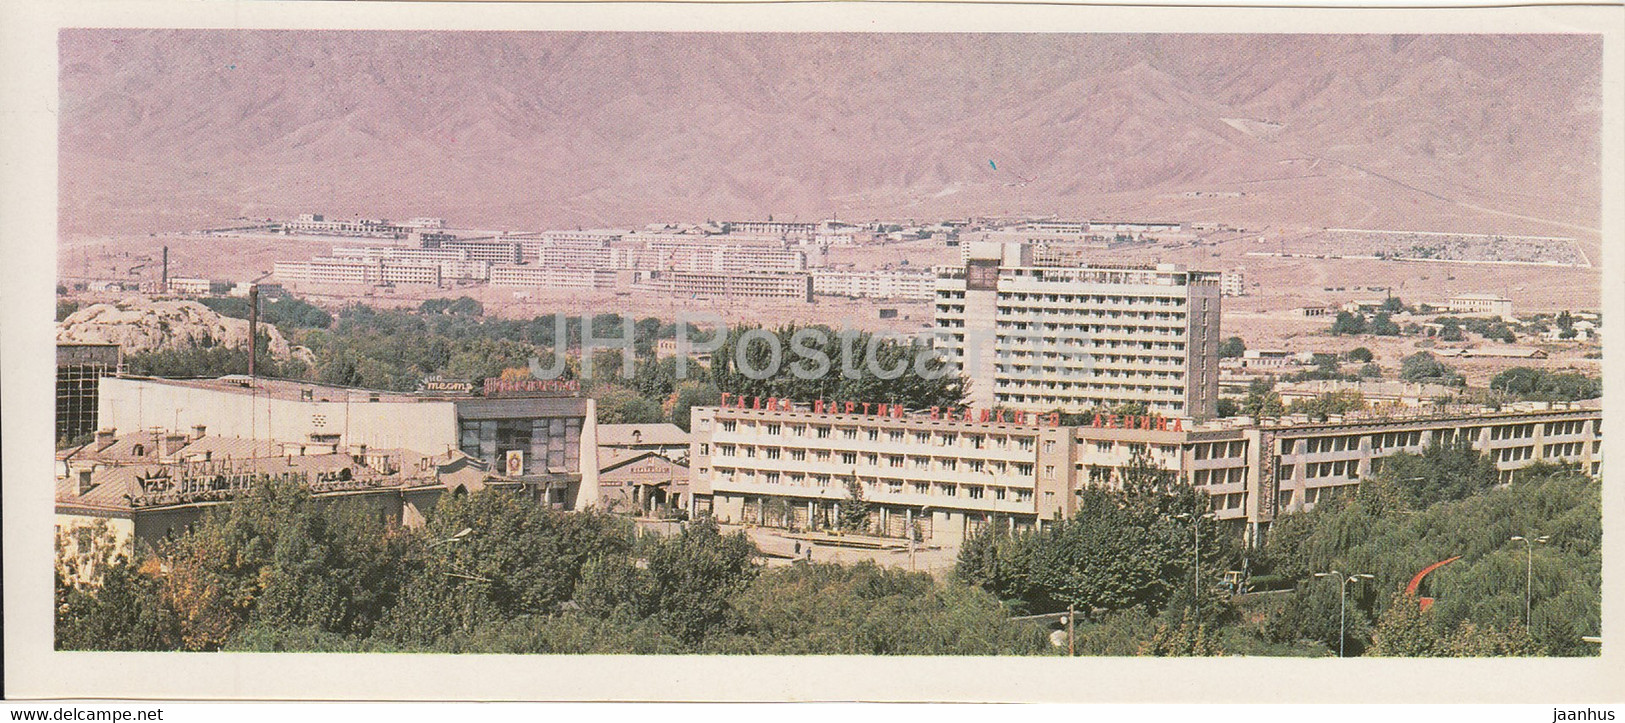 Leninabad - Khujand - New Neighborhoods Are Growing - 1979 - Tajikistan USSR - Unused - Tajikistan